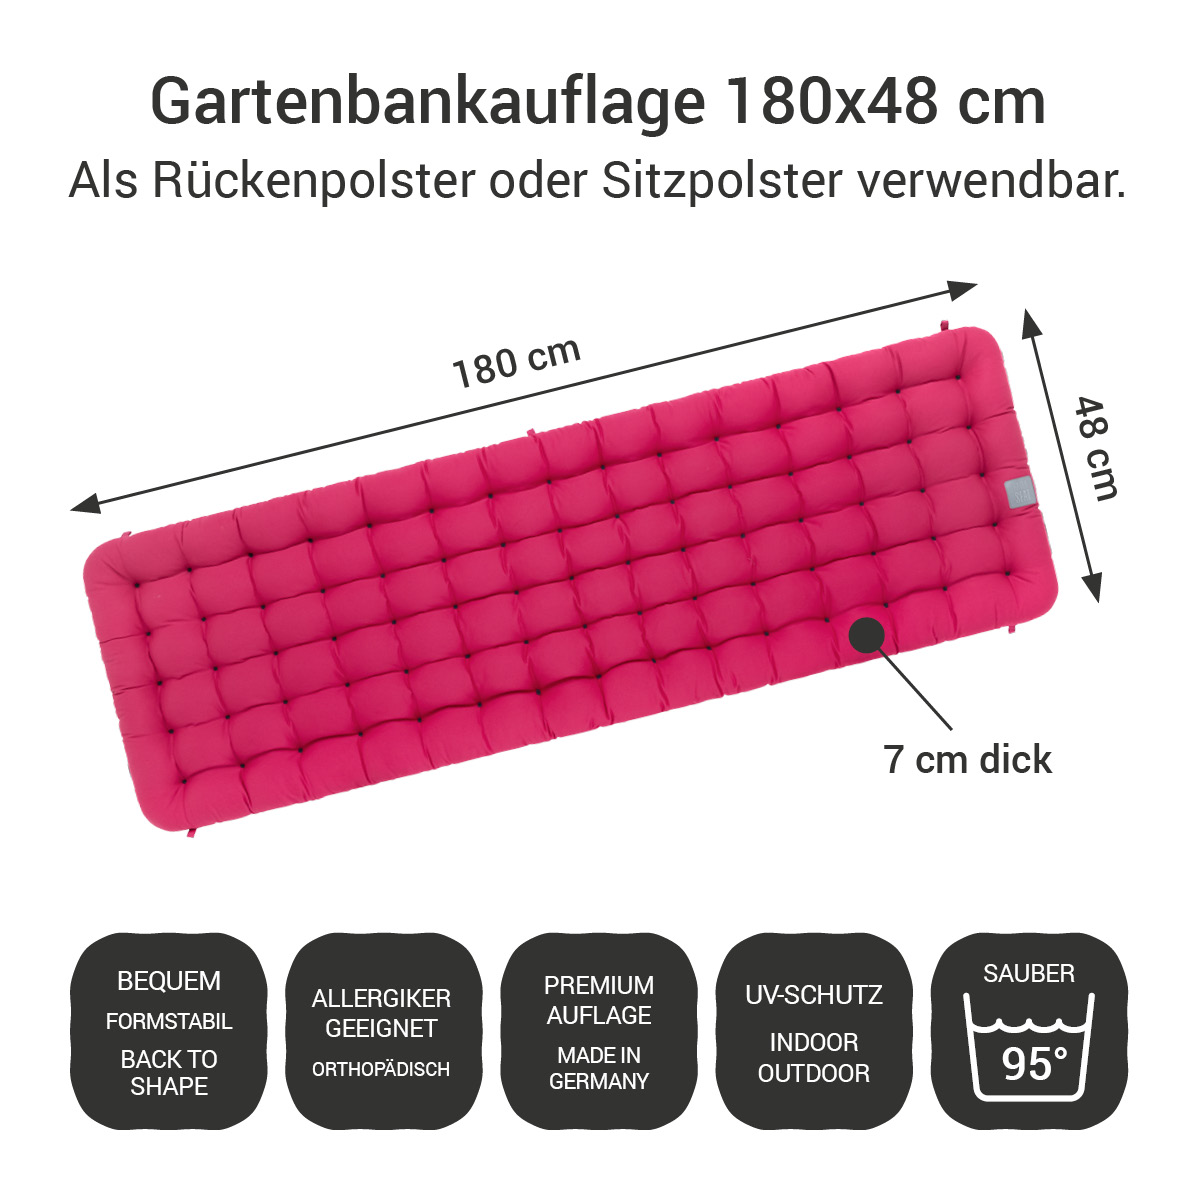 Gartenbankauflage hot pink | 180x48 cm / 180 x 50 cm | bequem & orthopädisch, komplett im Ganzen waschbar bis 95°C, wetterfest, Made in Germany